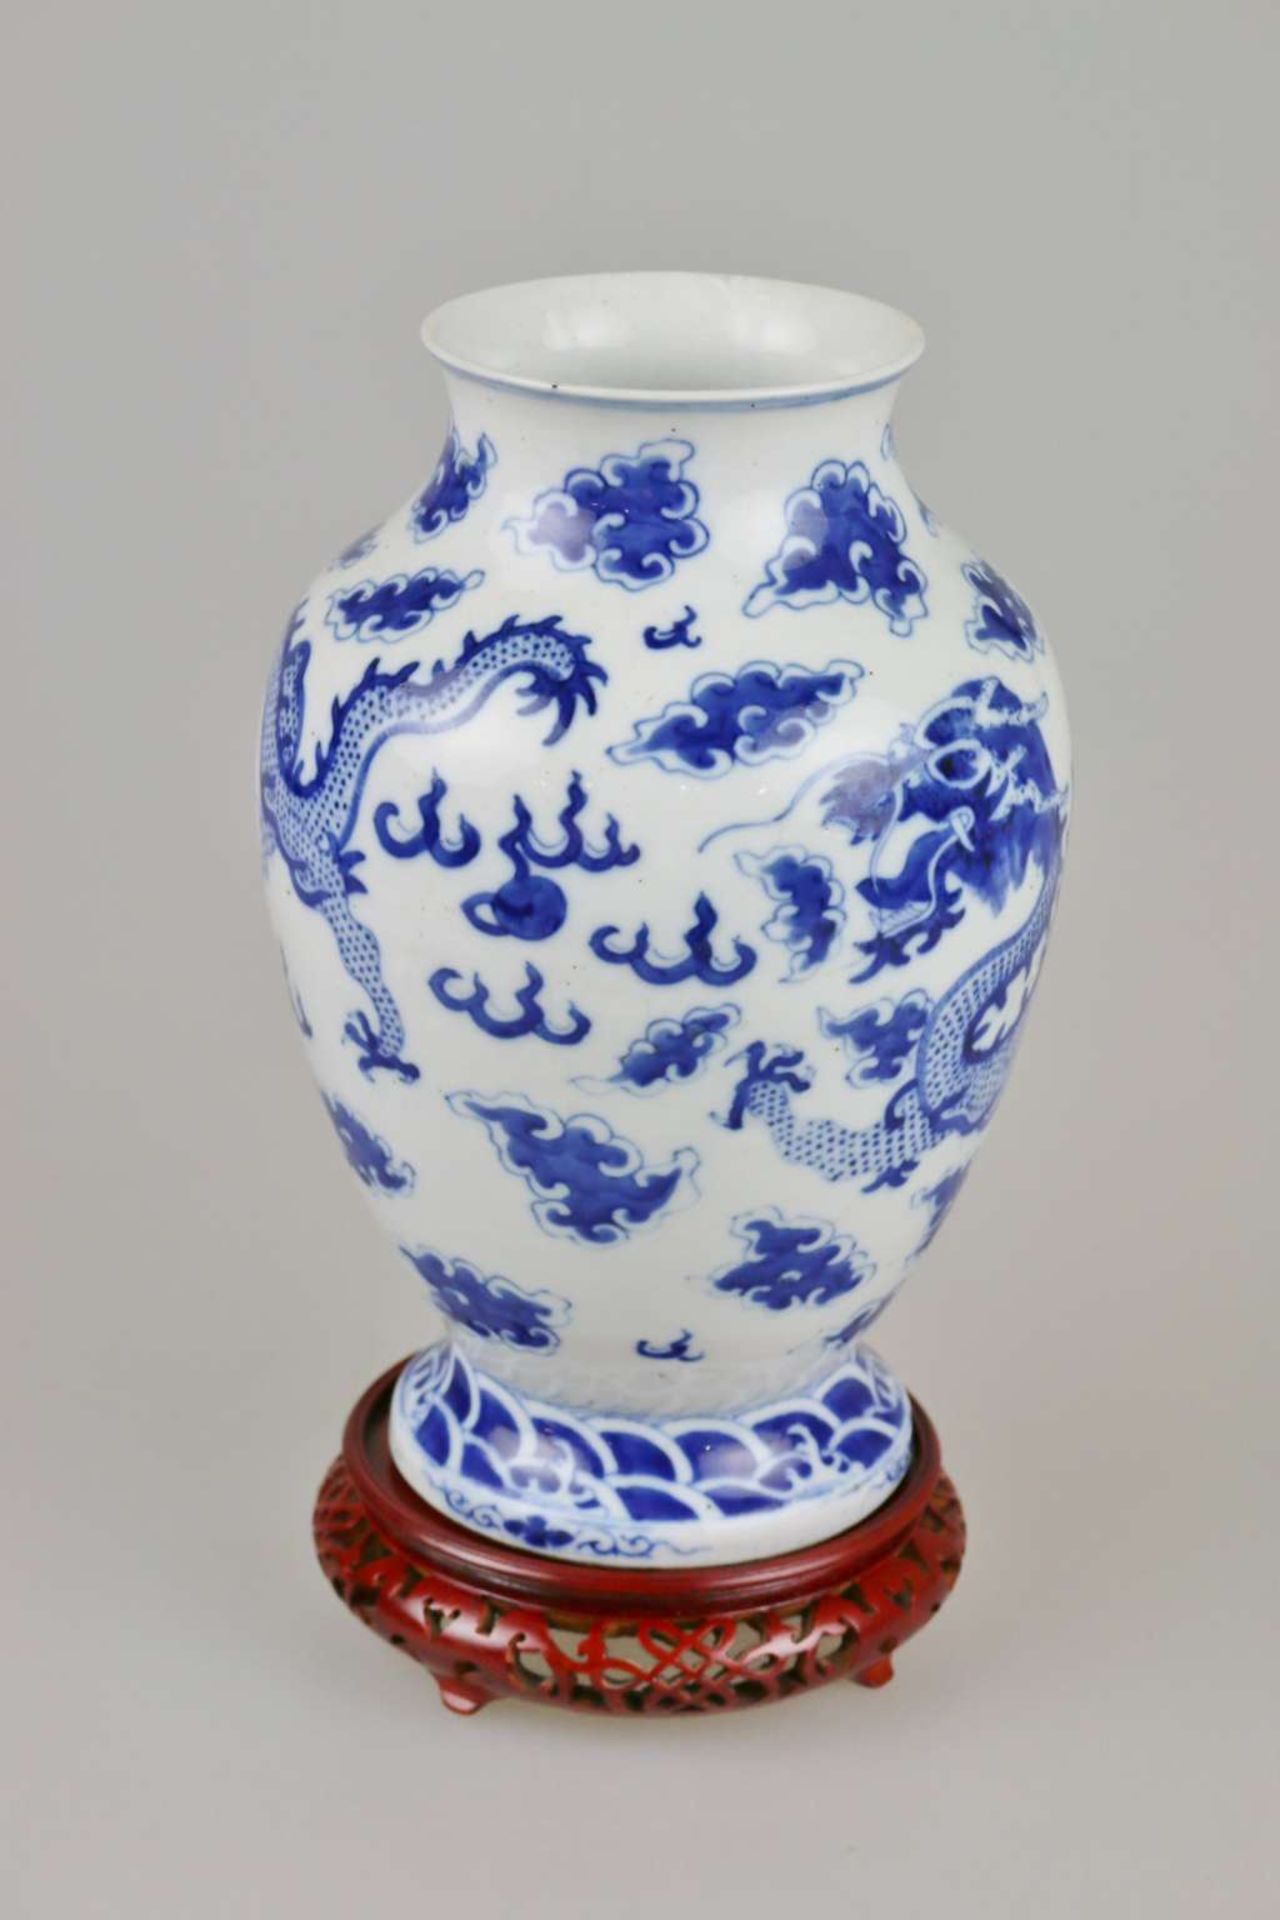 Vase in Blau-Weiß-Malerei - Image 2 of 4